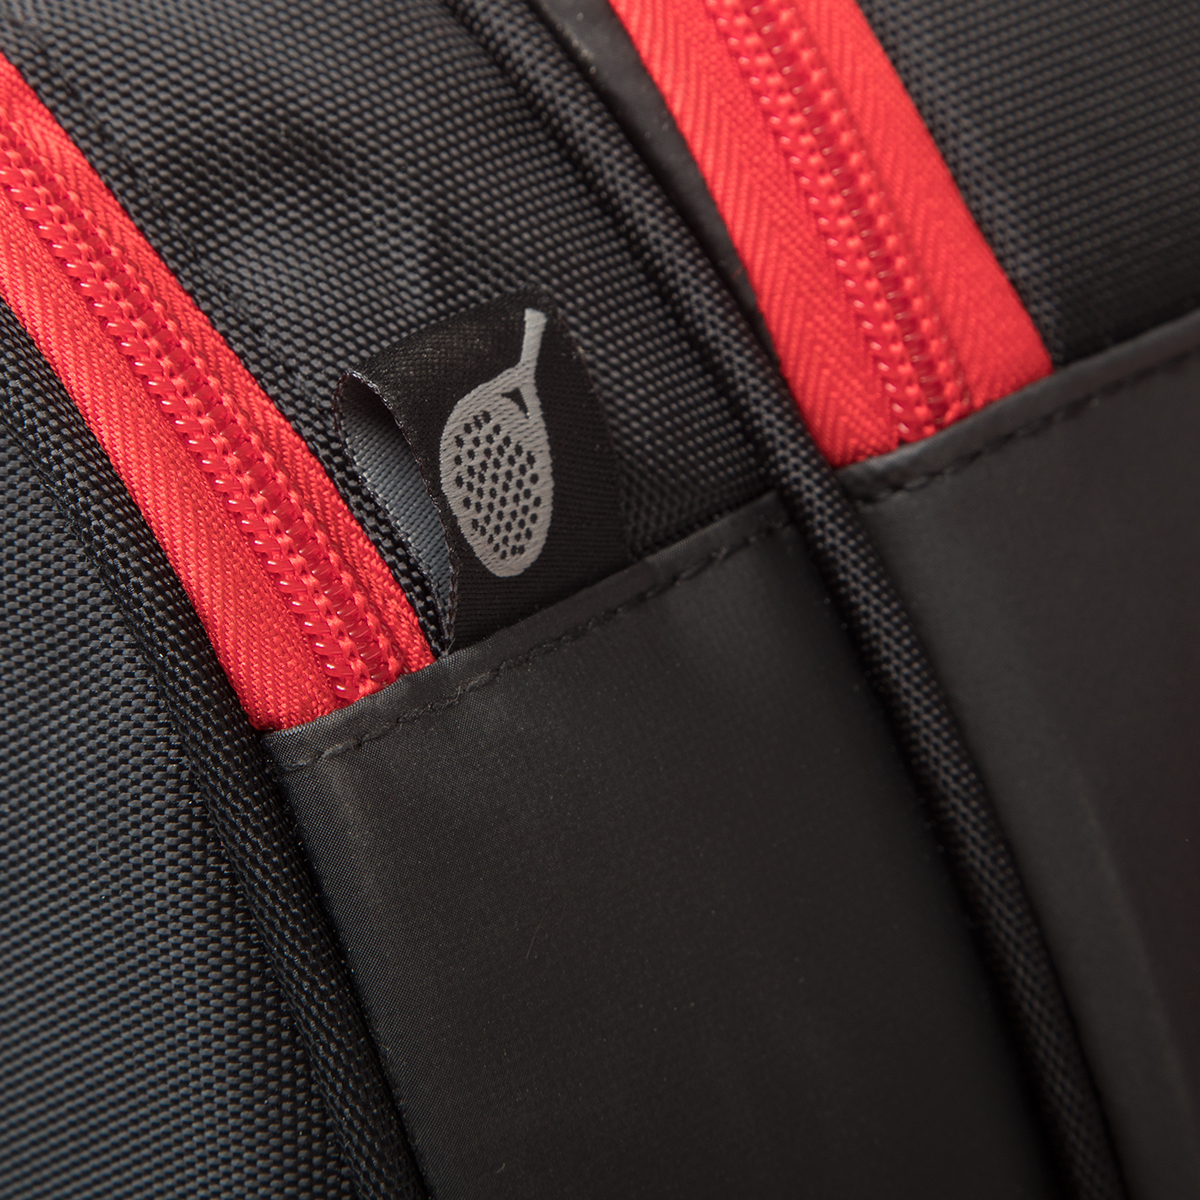 Adidas Racket Bag Multigame - Svart/Röd